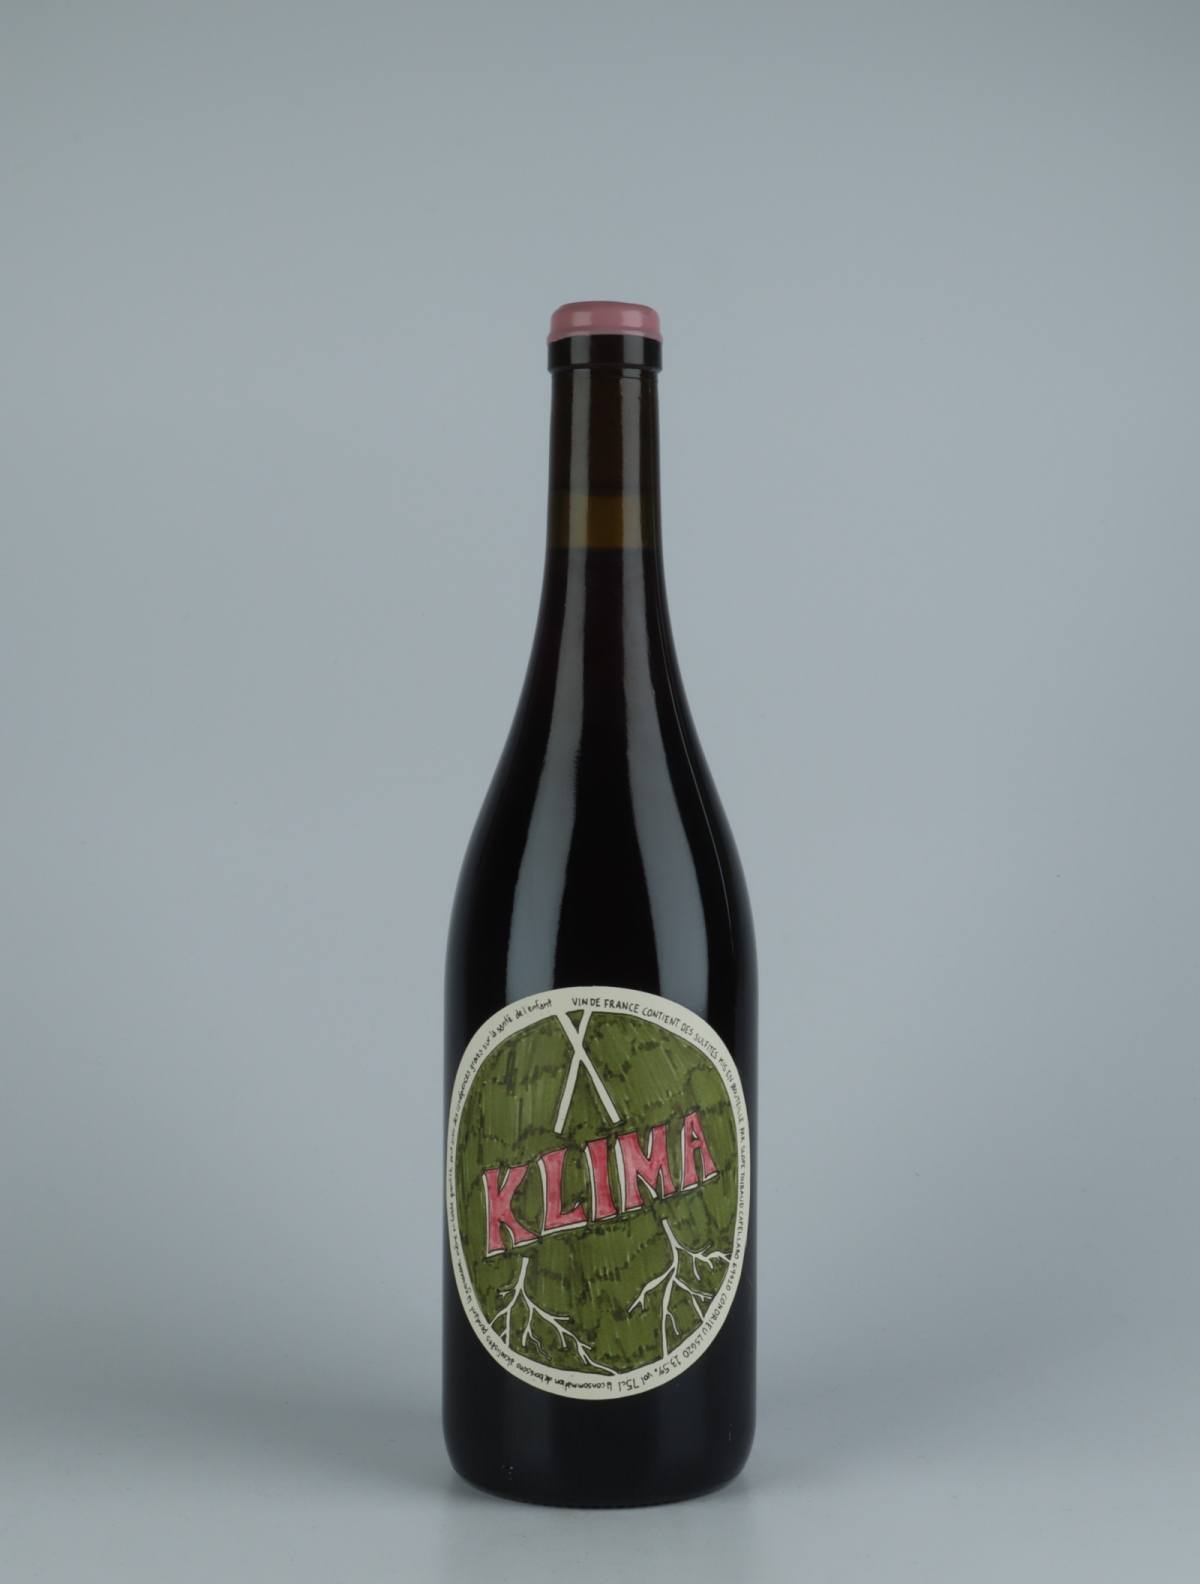 A bottle 2020 Klima Red wine from , Rhône in France